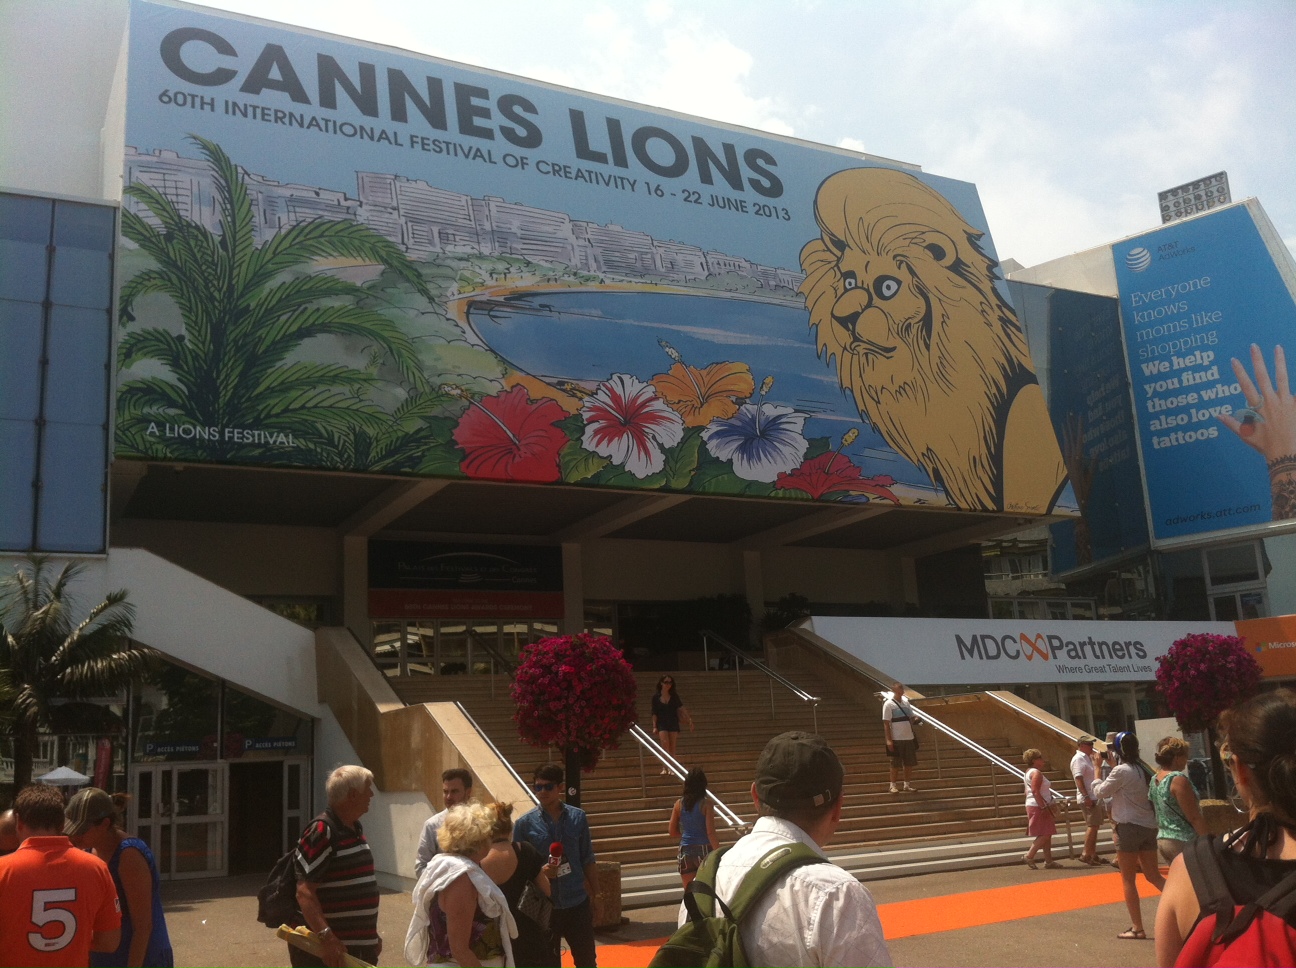 Cannes Lions 2013